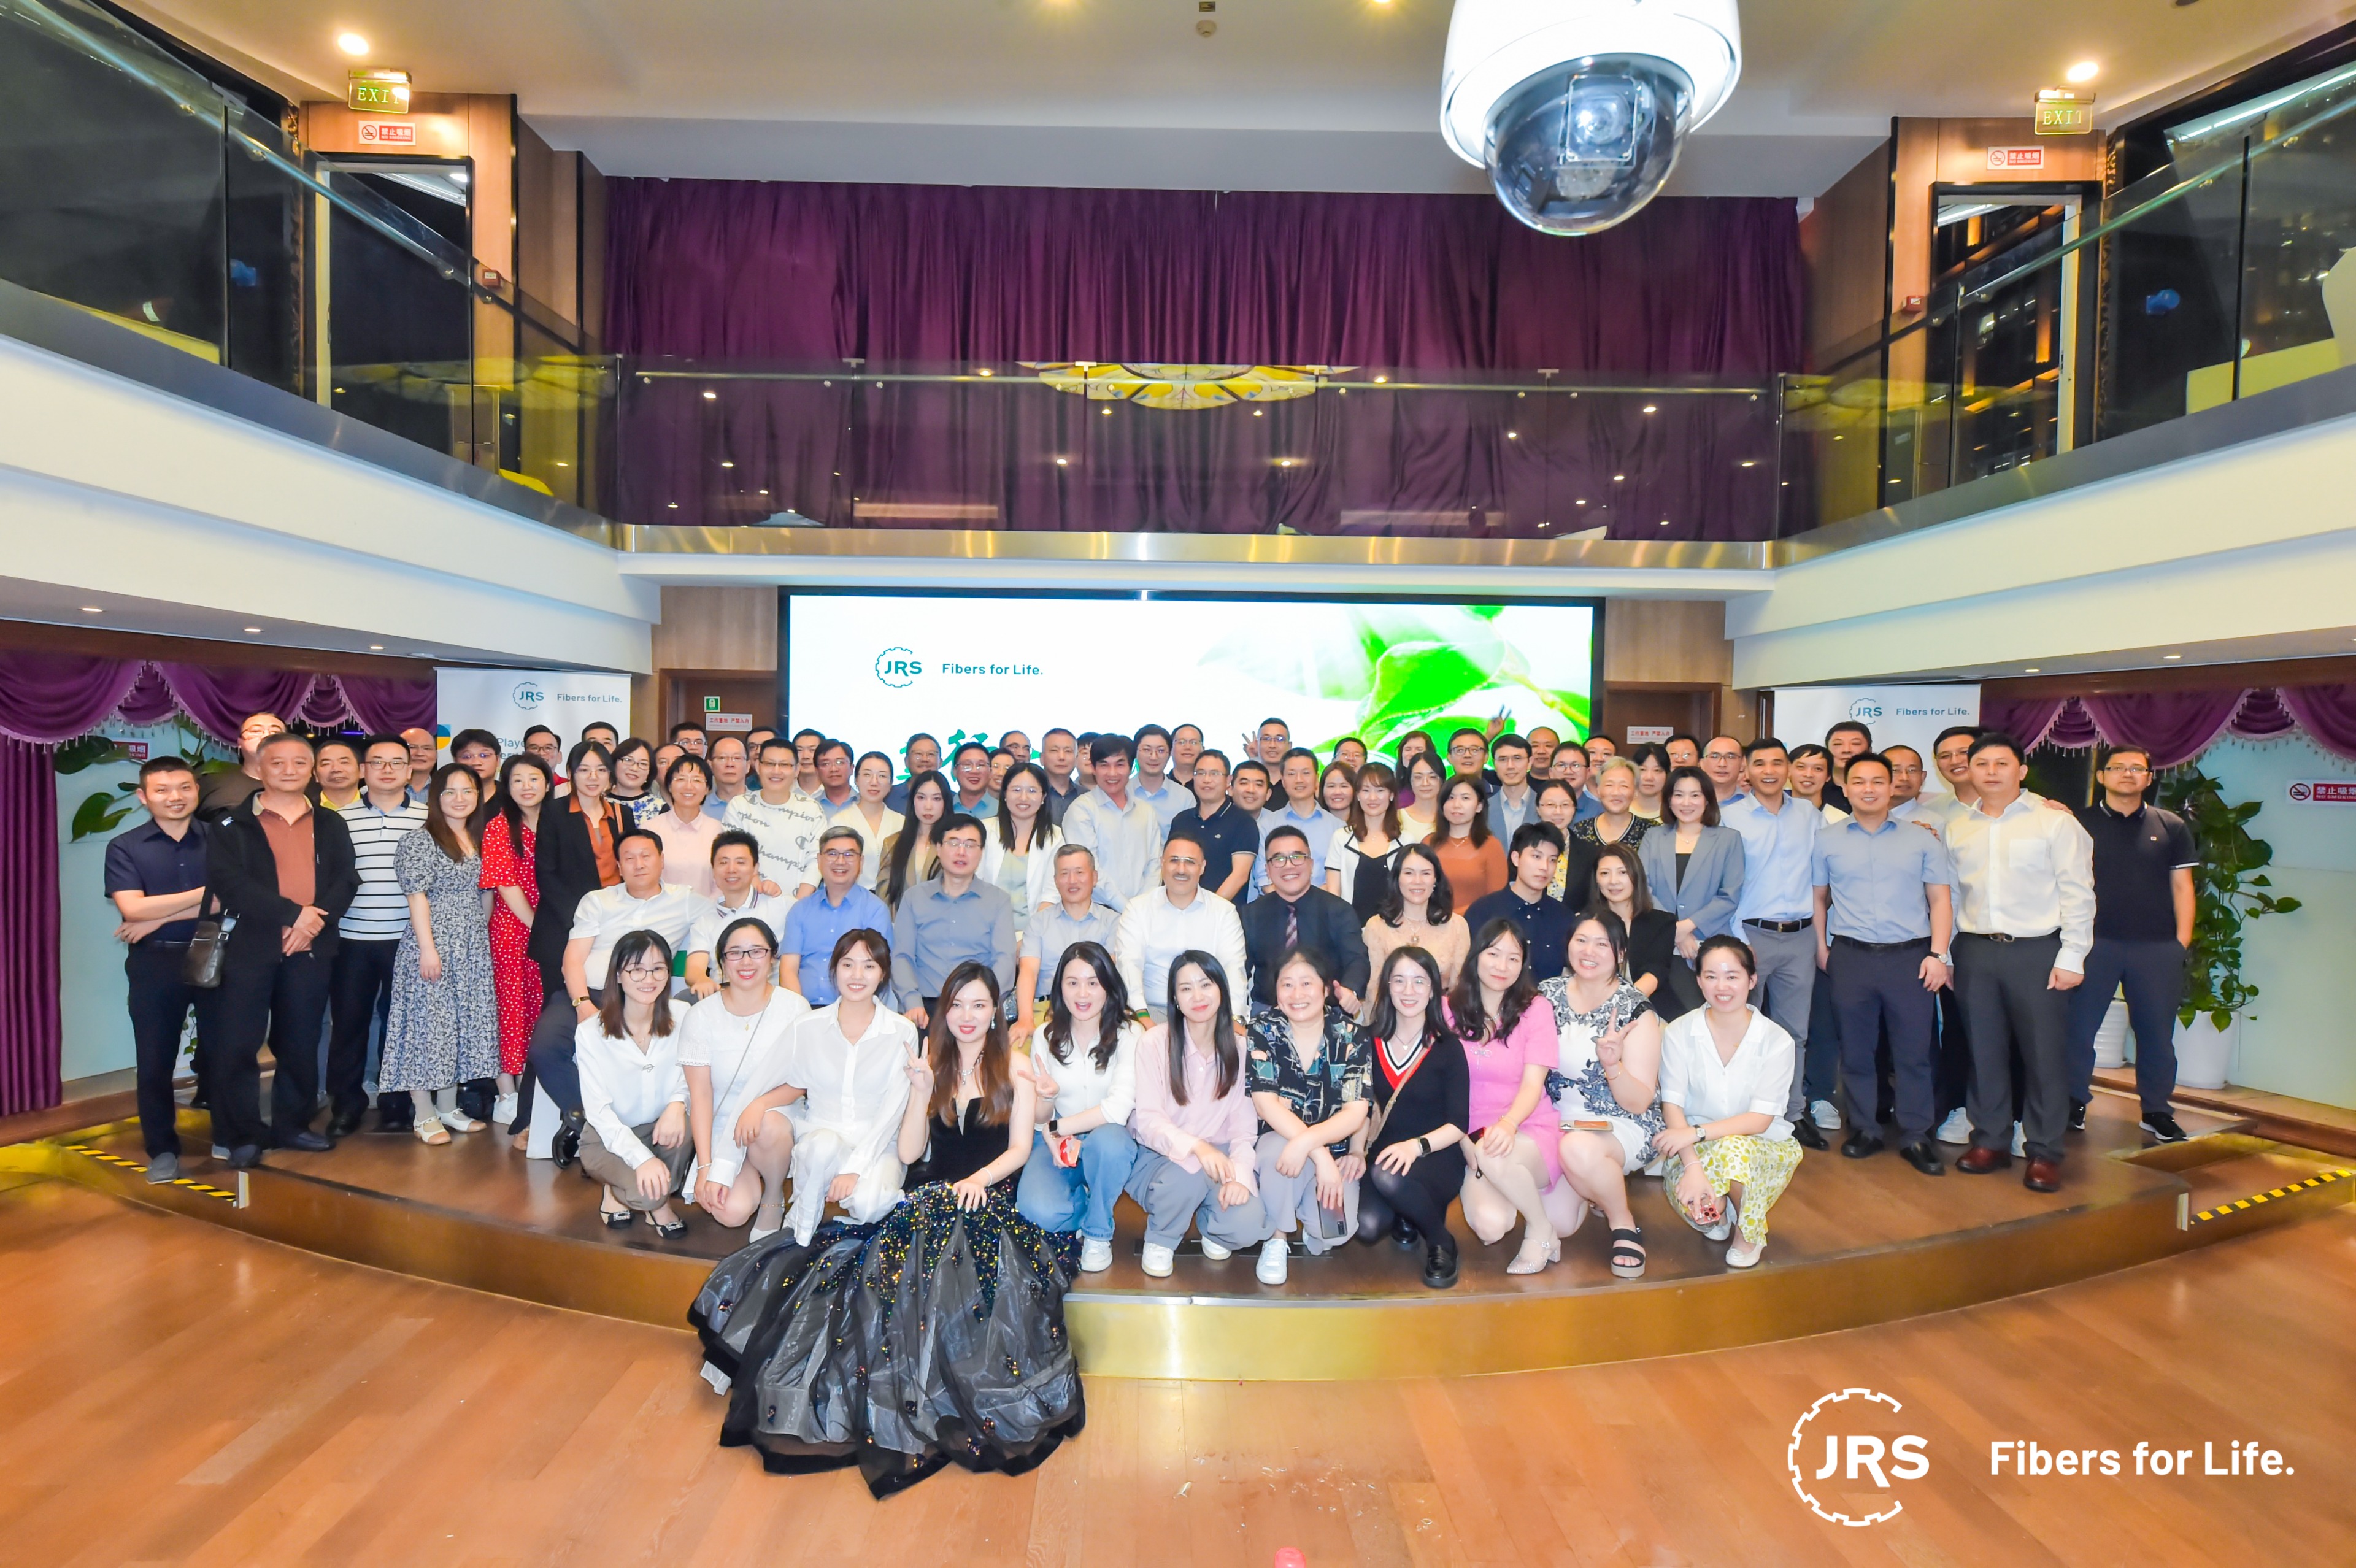 Die JRS Familie gratuliert JRS Shanghai zum 20-jährigen Bestehen!